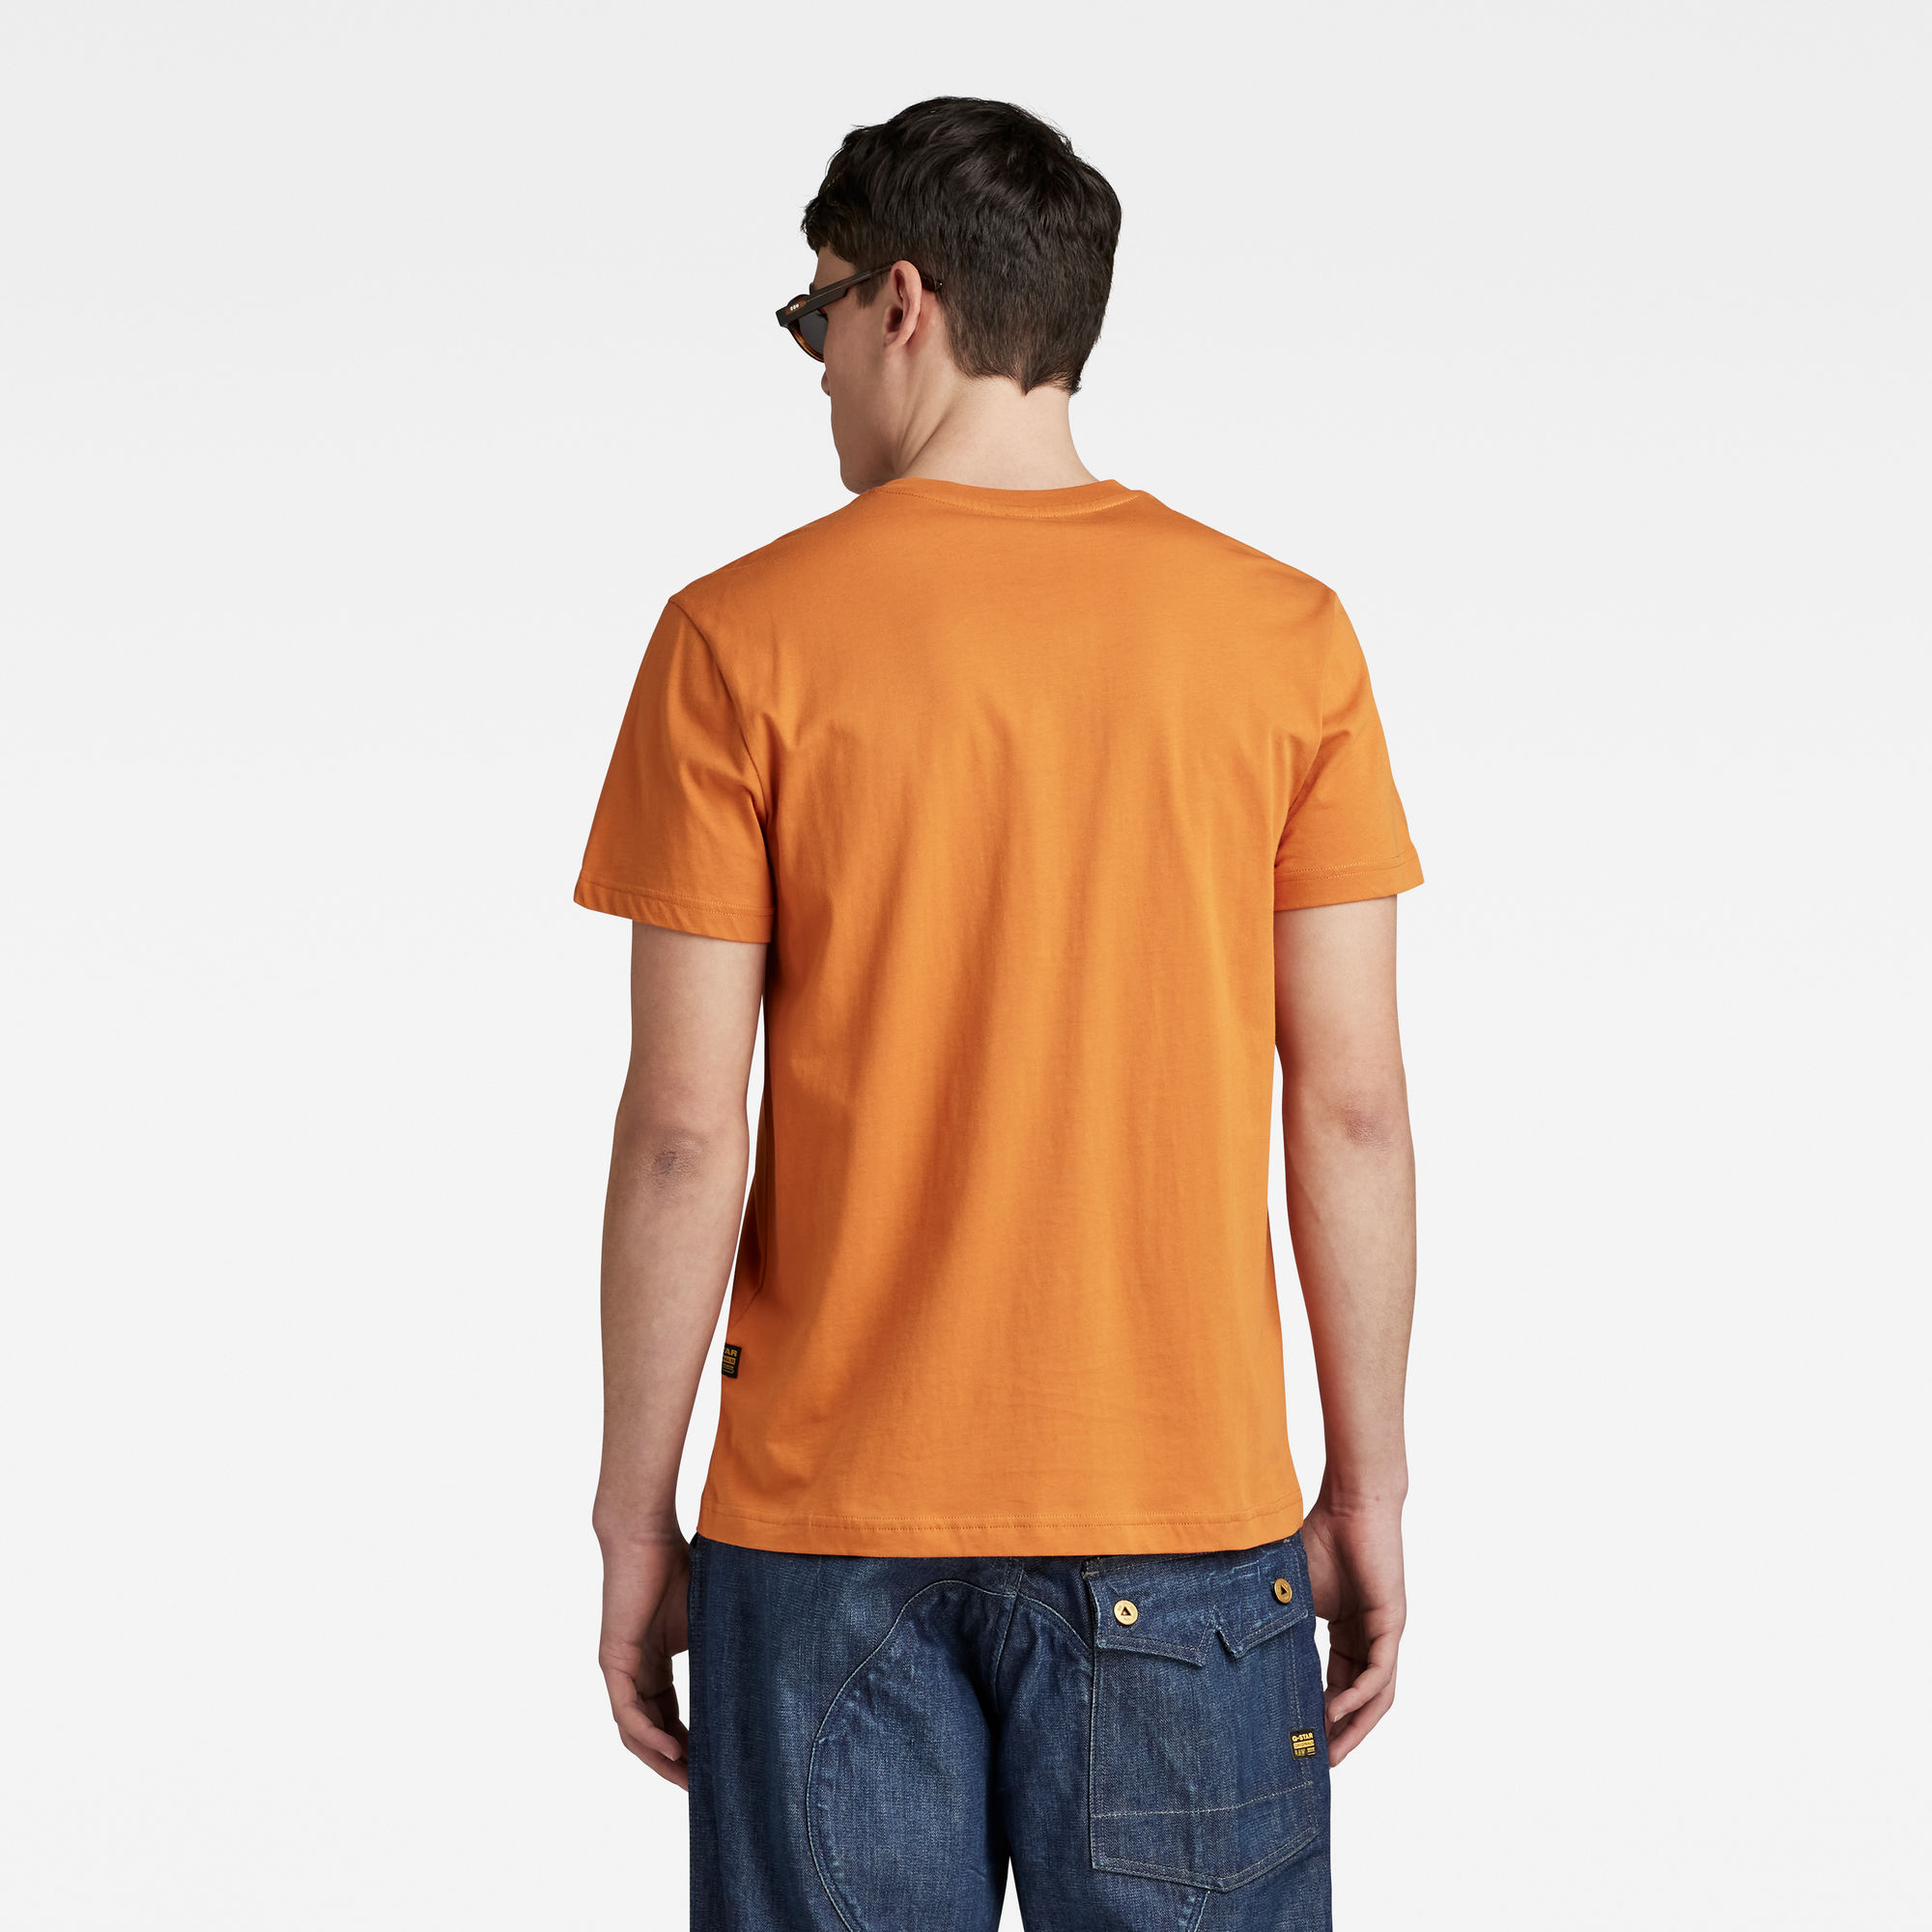 G-Star RAW Multi Logo Graphic T-Shirt Oranje Heren